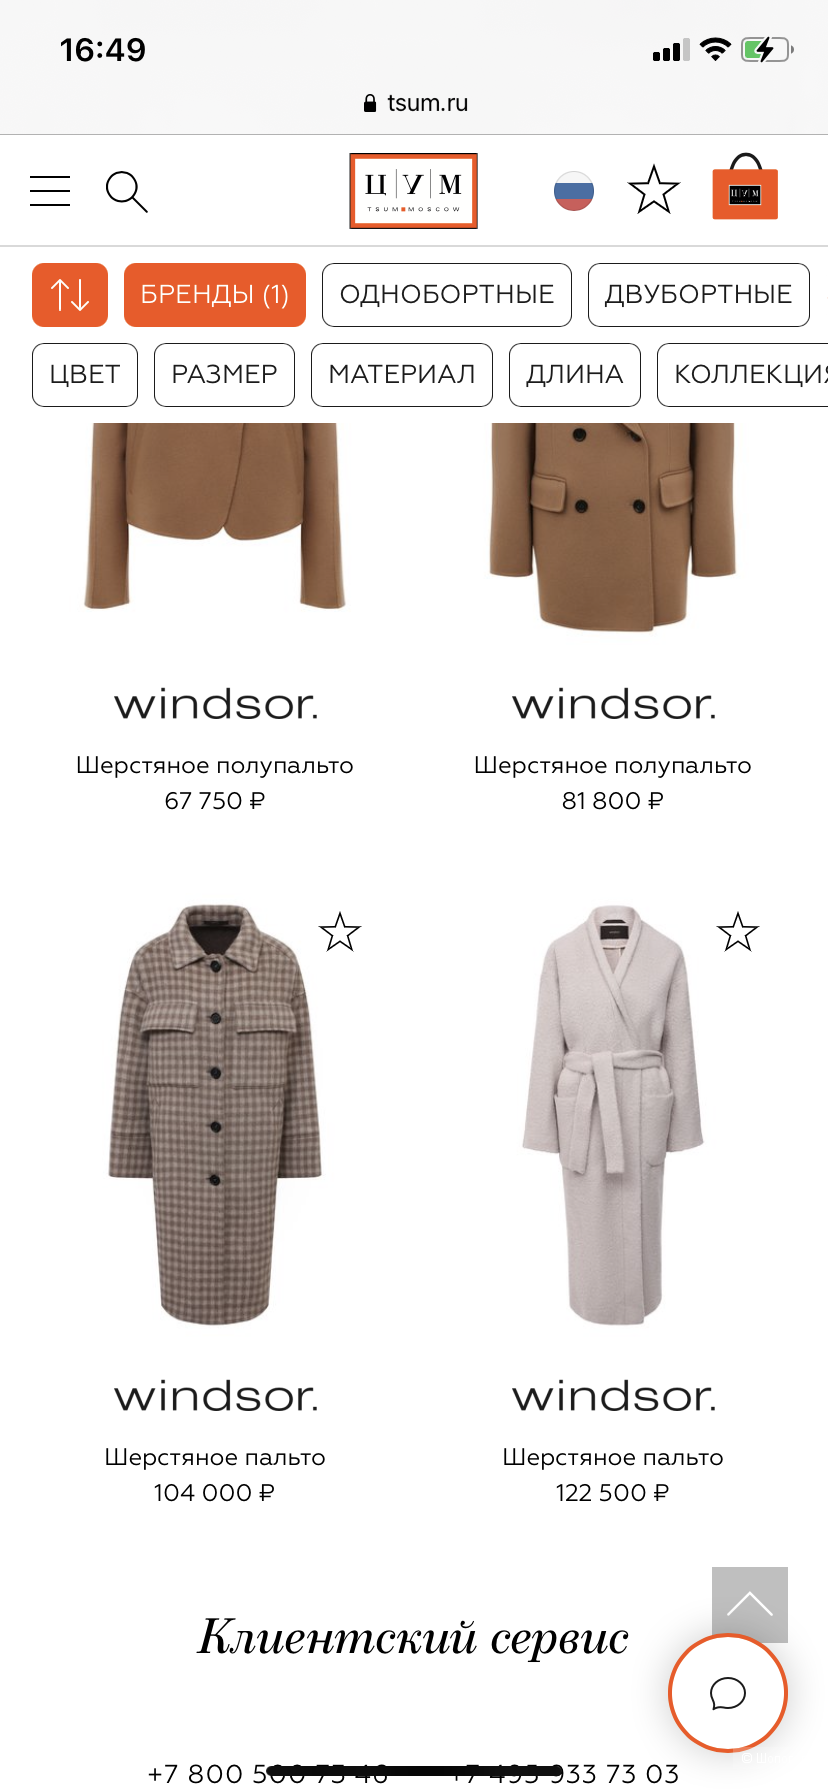 Кашемировое пальто Zegna/Windsor one size